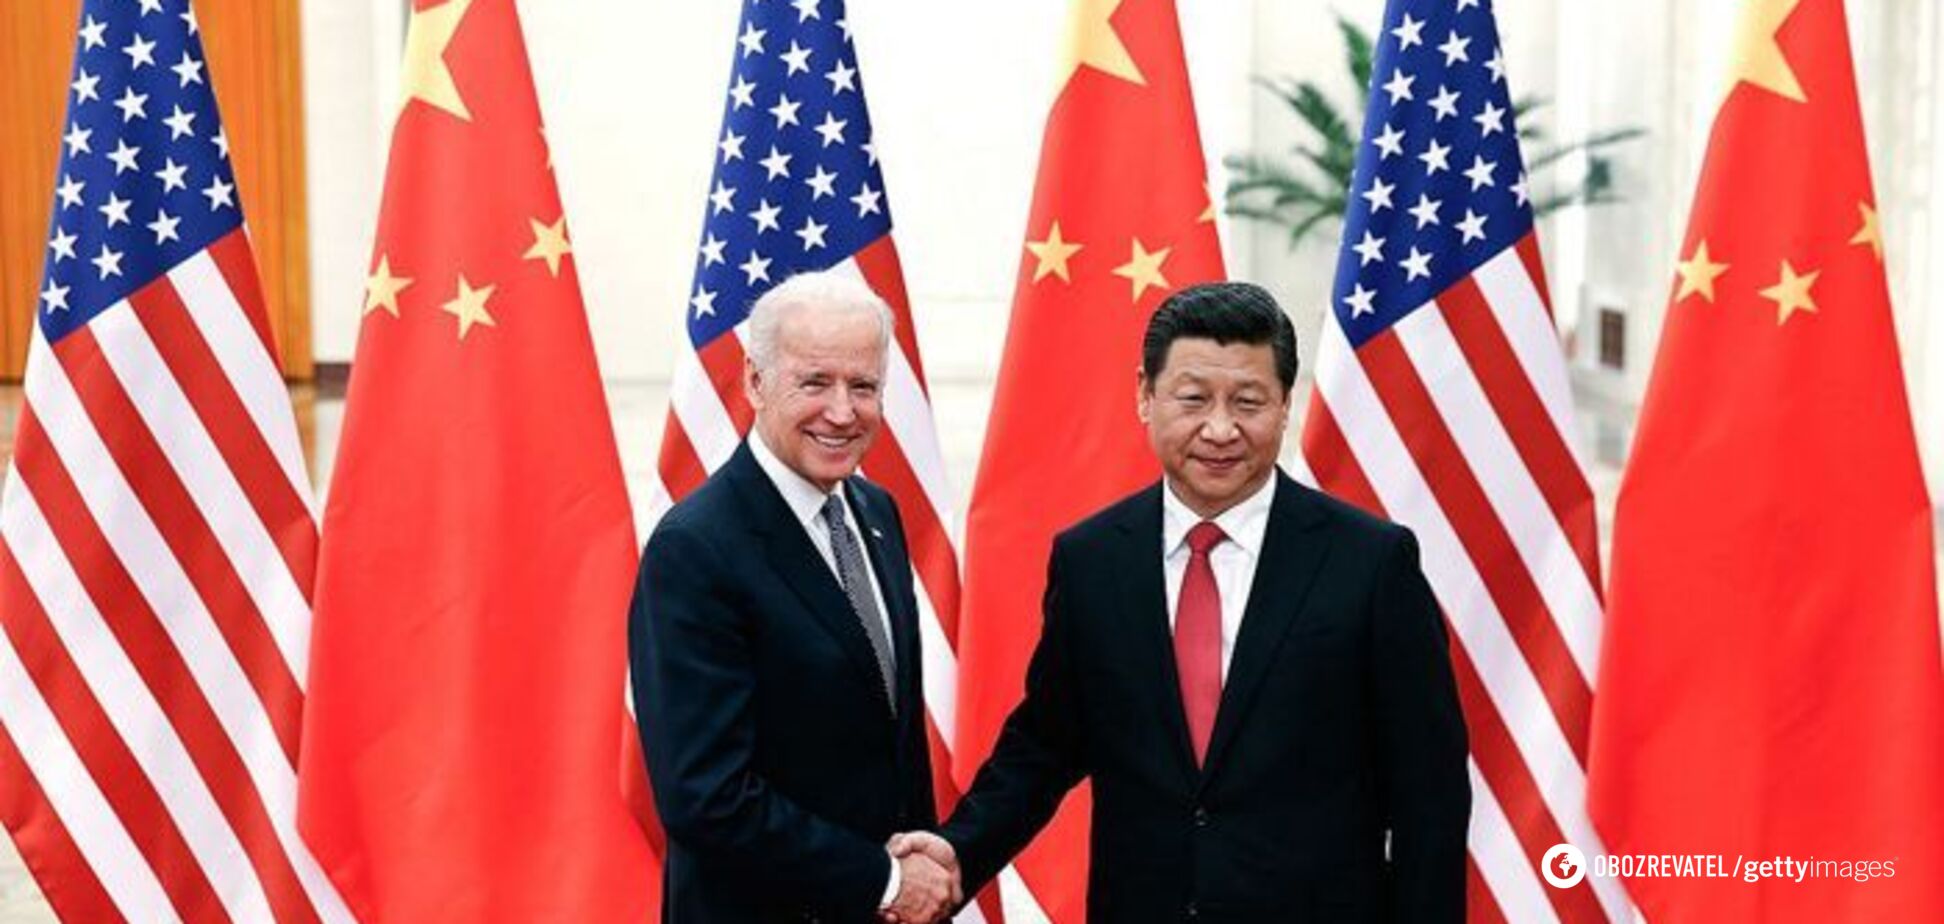 Джо Байден и Си Цзиньпин провели встречу в Сан-Франциско: все подробности. Видео